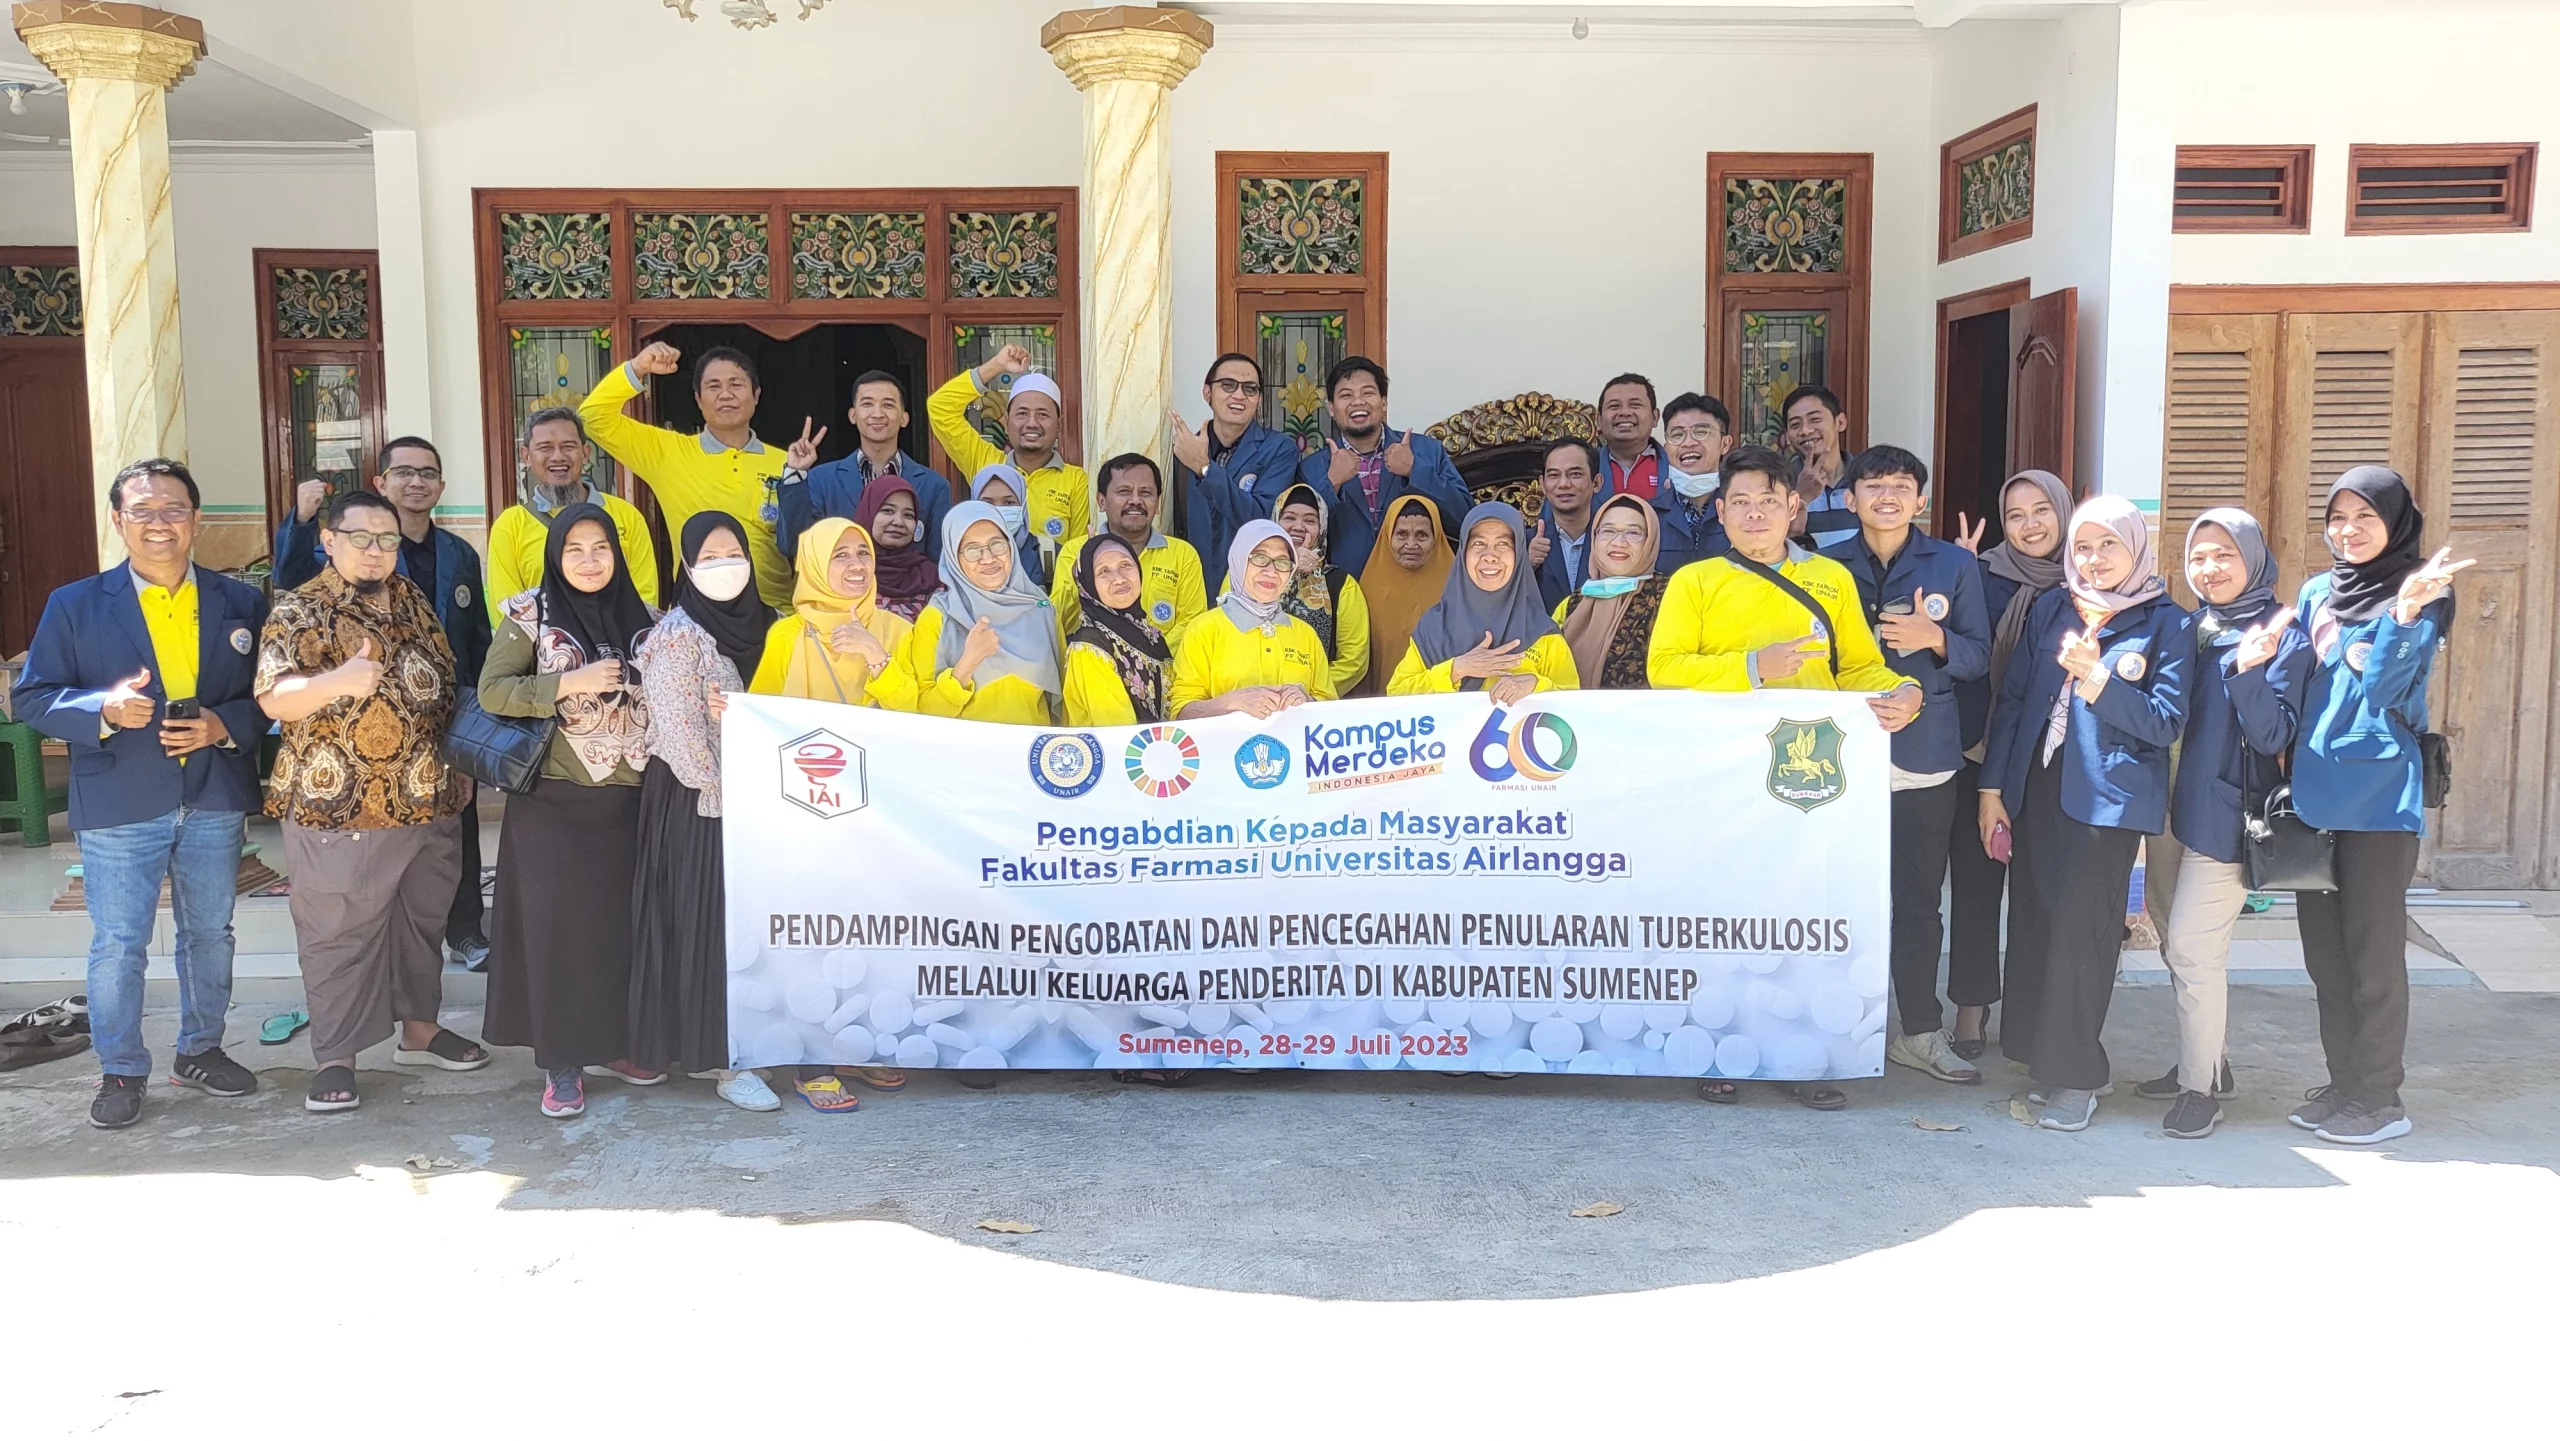 Foto bersama dosen, tenaga kependidikan, dan mahasiswa Fakultas Farmasi UNAIR saat pengabdian masyarakat di Kabupaten Sumenep. (Foto: Istimewa)